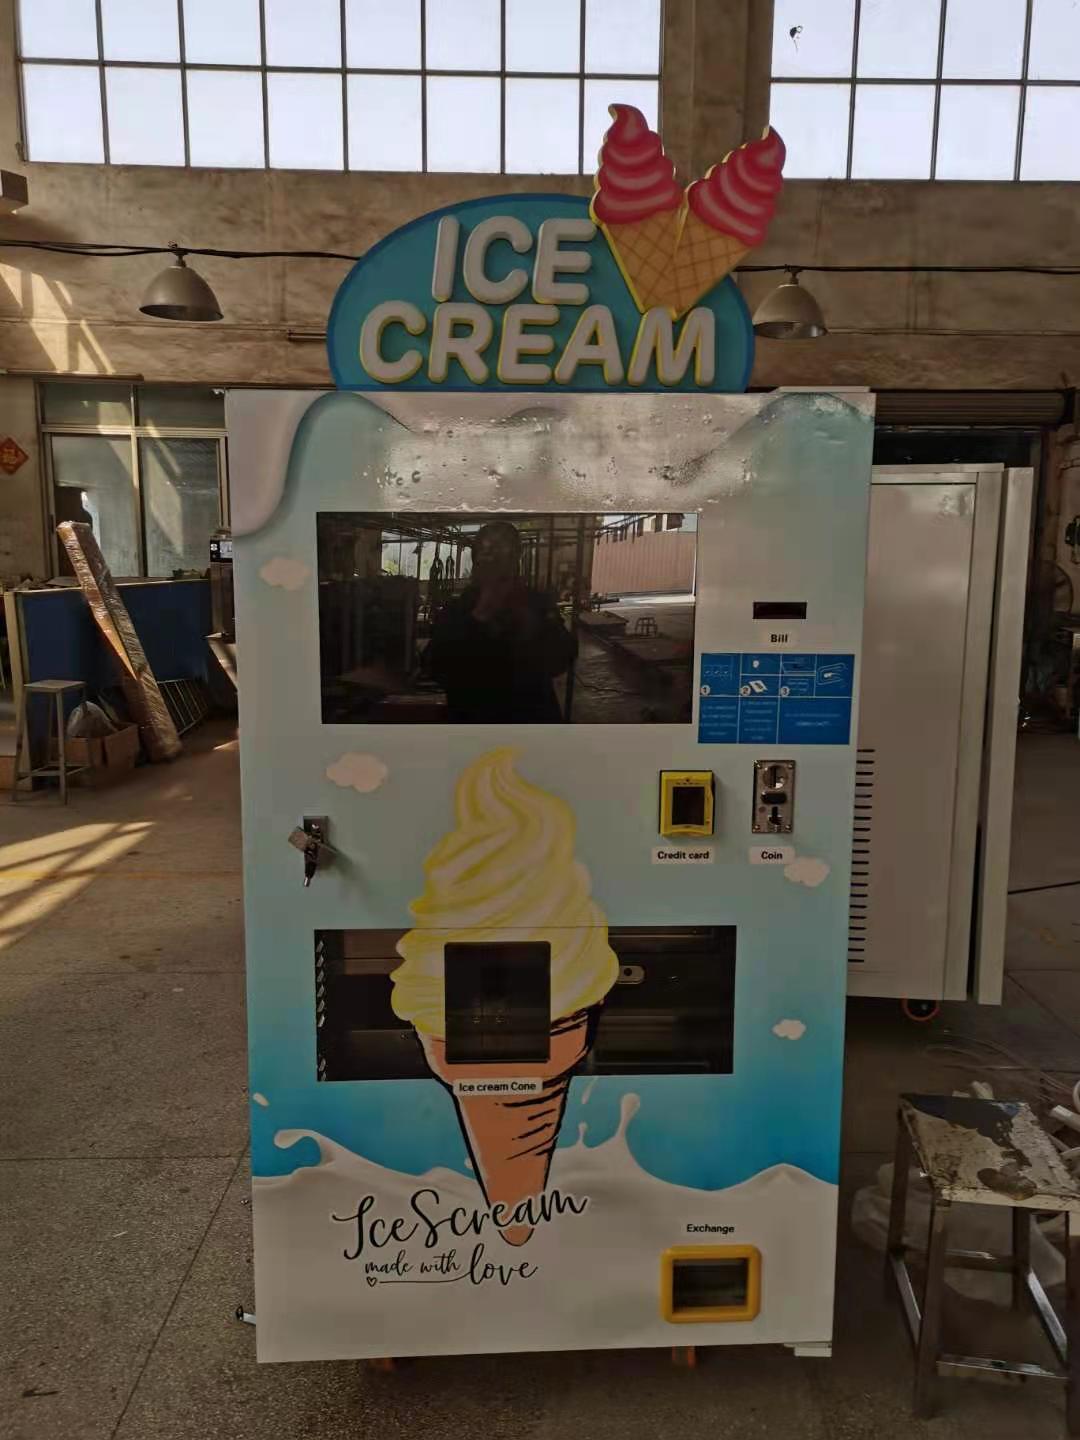 Máquina expendedora de helado suave